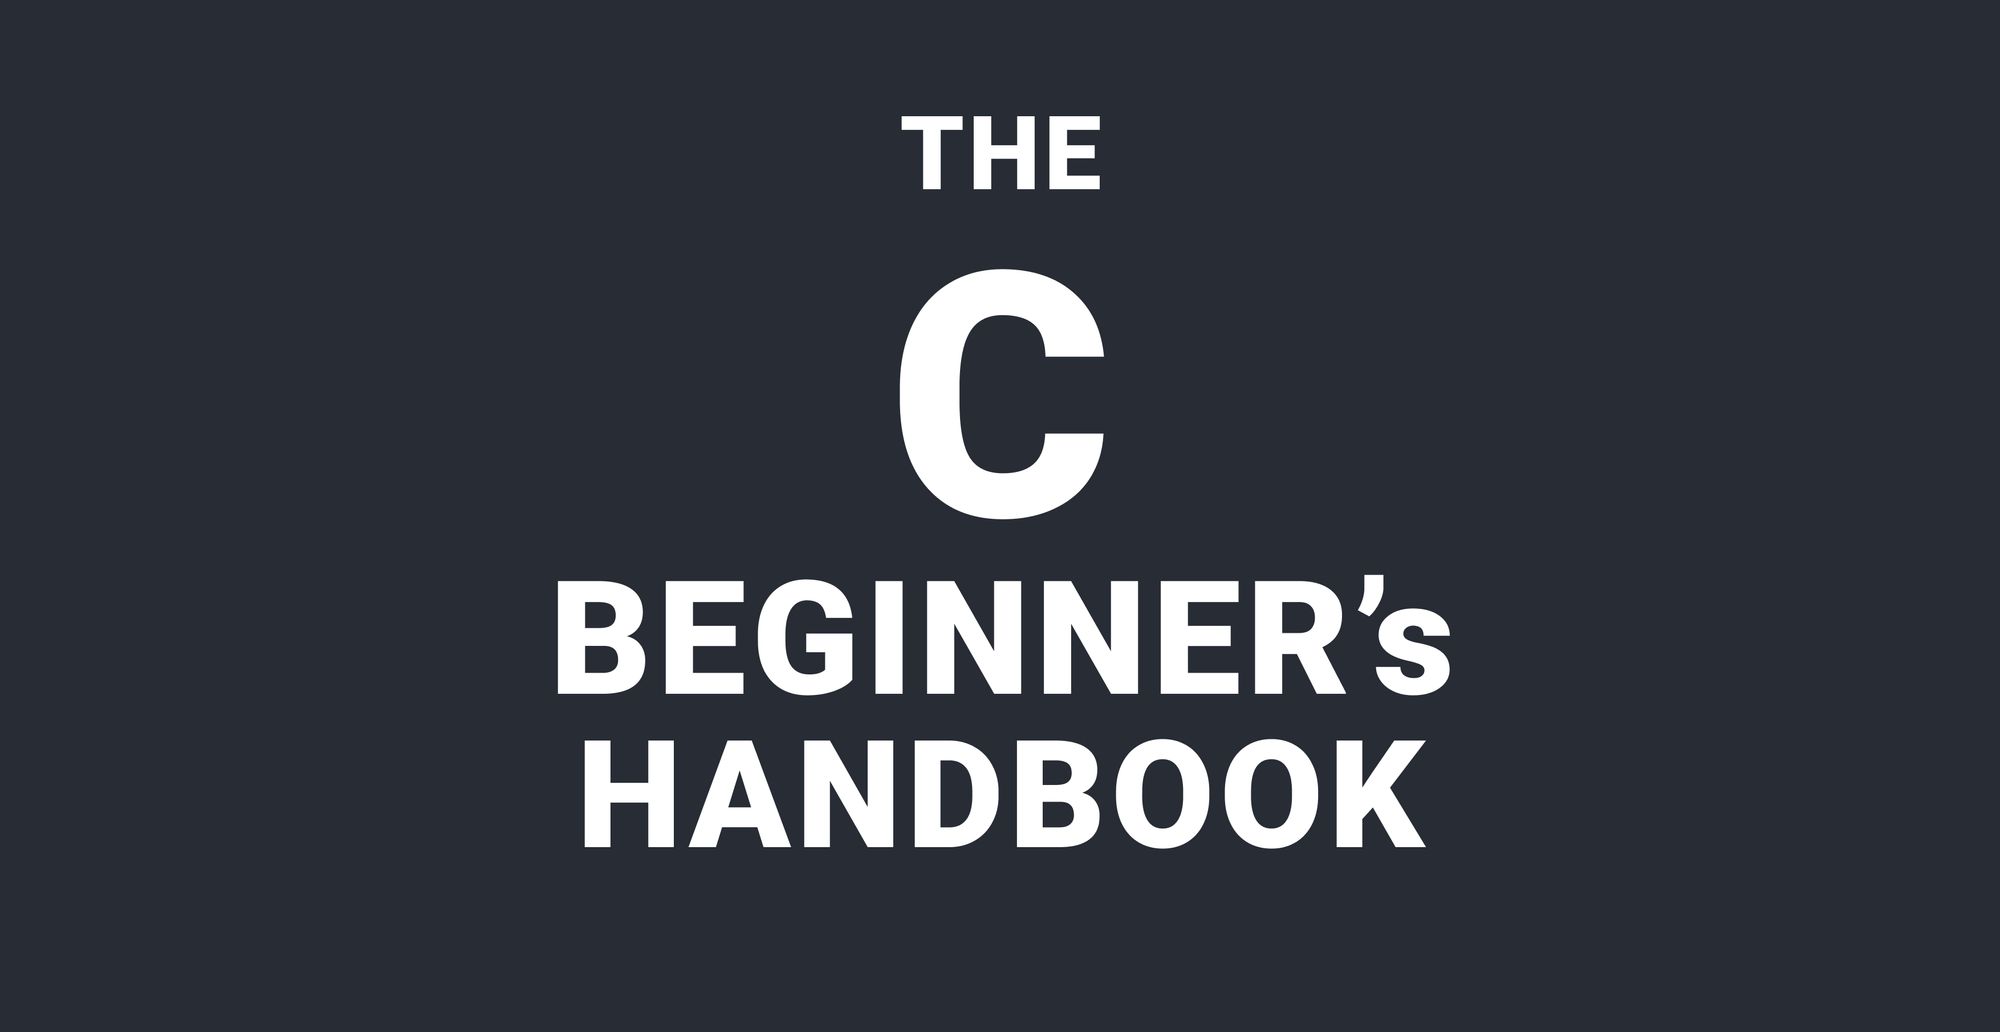 C 语言入门手册：几小时内就能学会的 C 语言基础